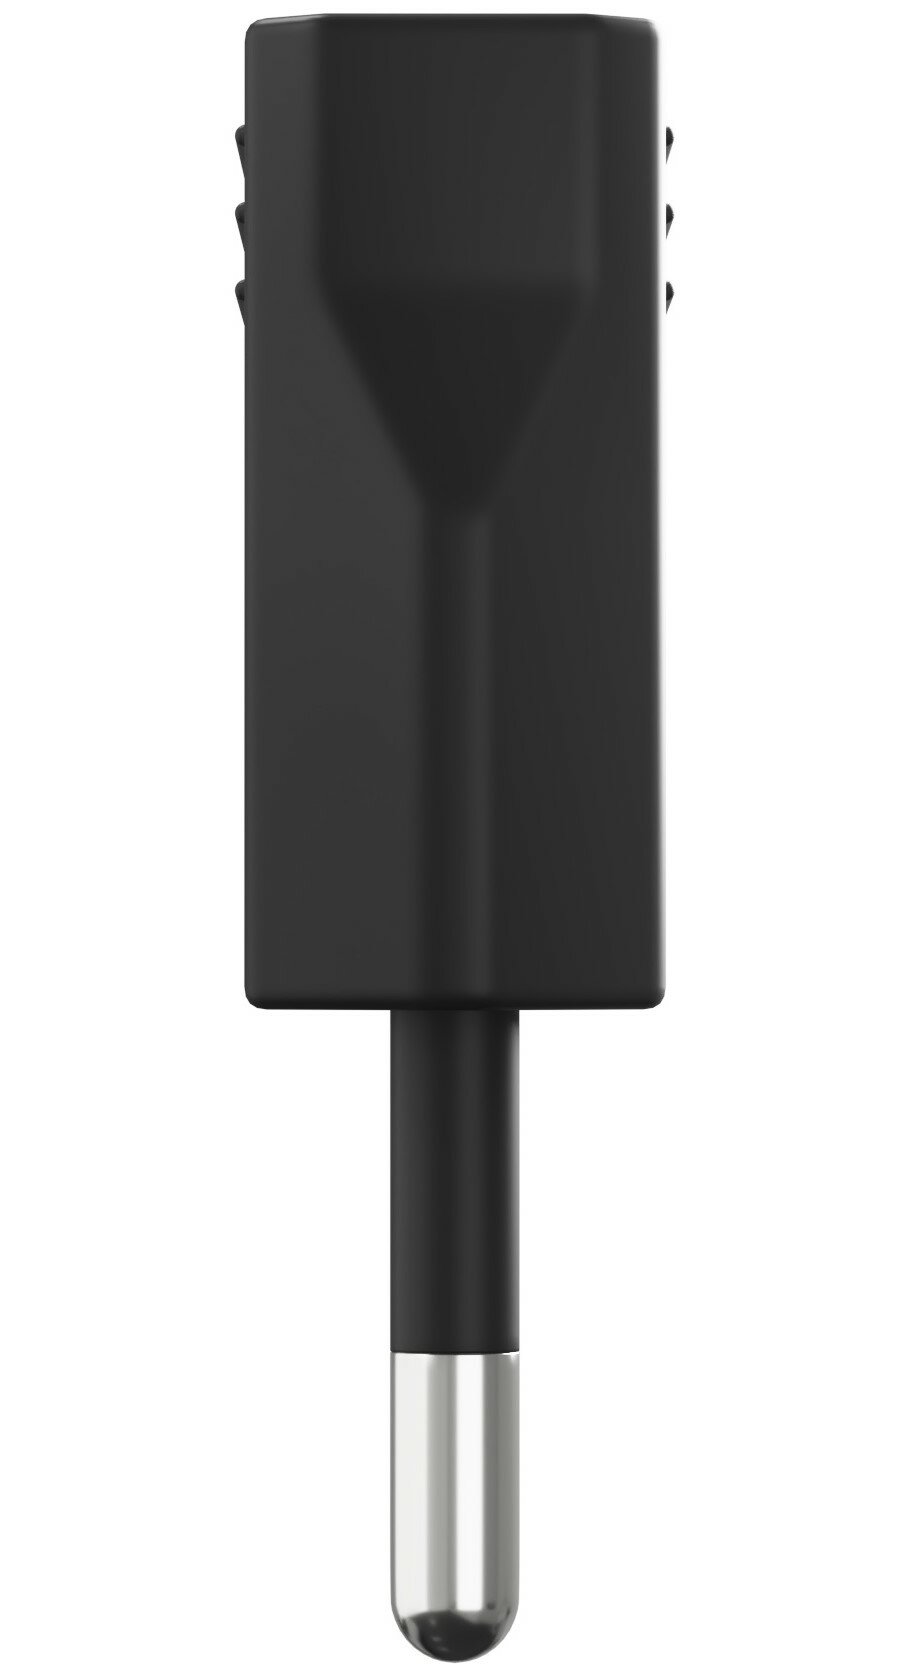 Адаптер сетевой на евровилку, евро розетку GSMIN Travel Adapter A8 переходник для американской, китайской вилки US/CN (250 В, 6А) (Черный)